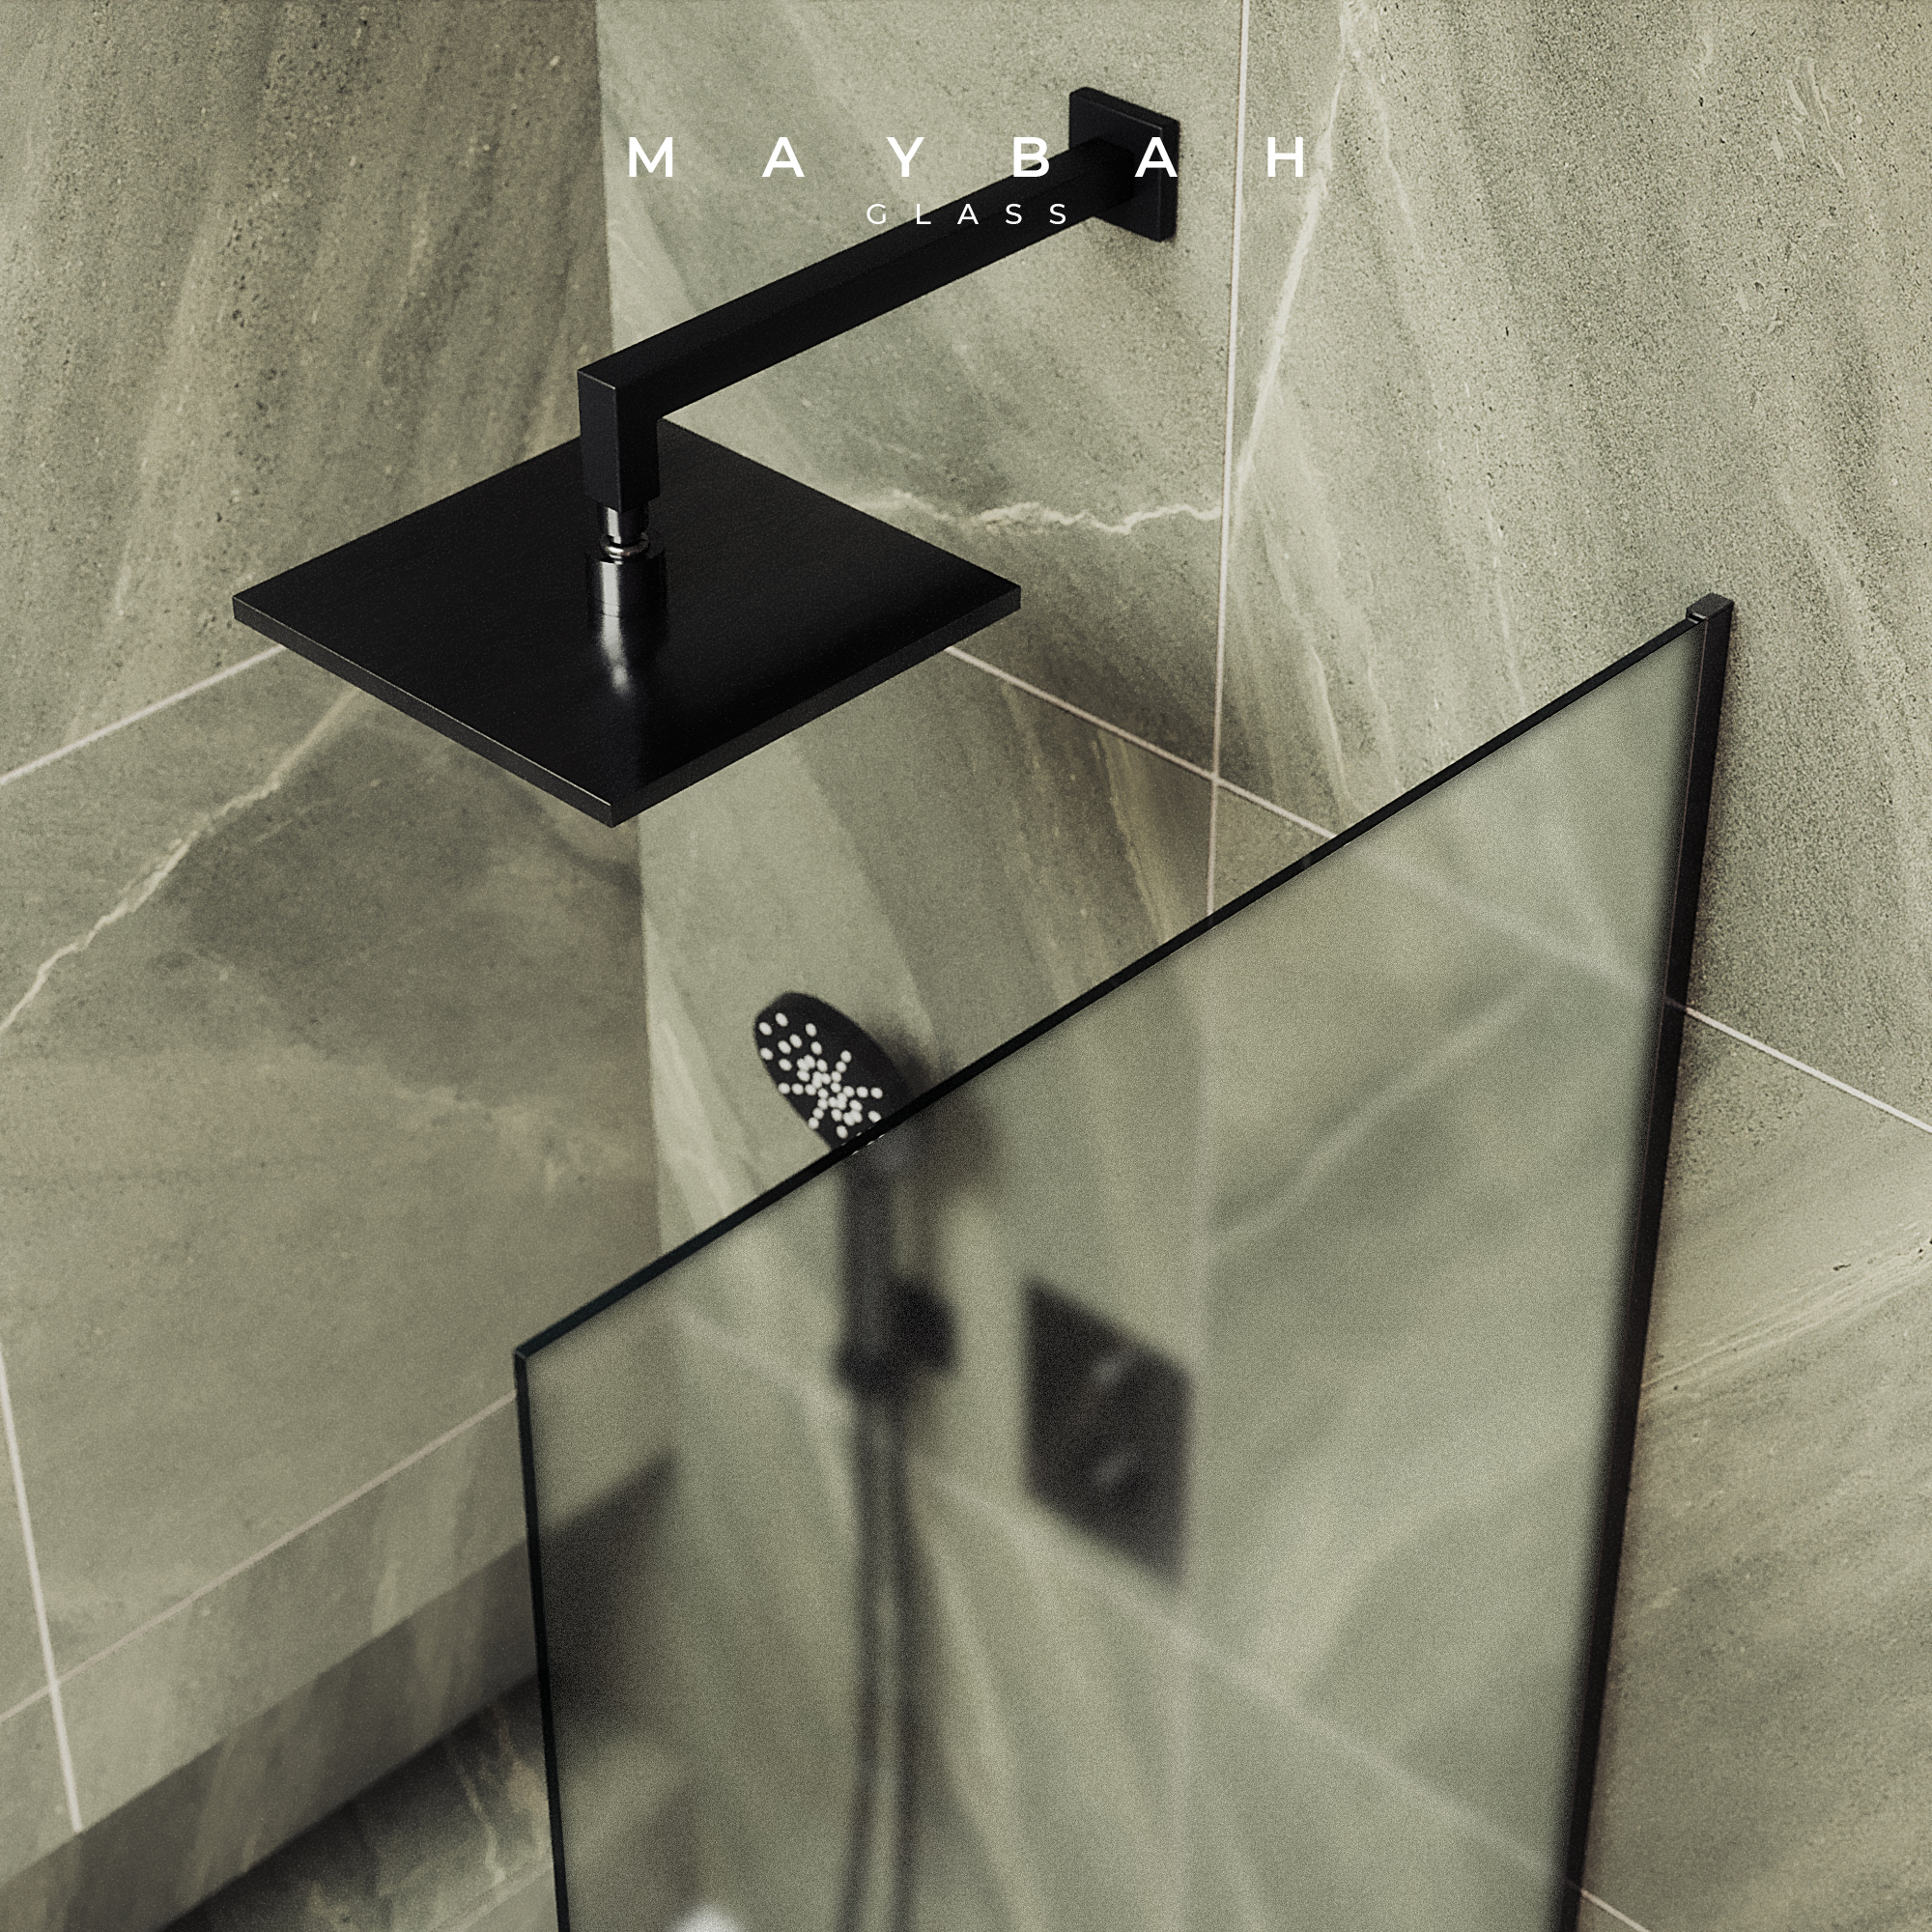 Шторка для ванны MaybahGlass 80х140 MGV-94-6у стекло сатин, профиль черный - фото 4